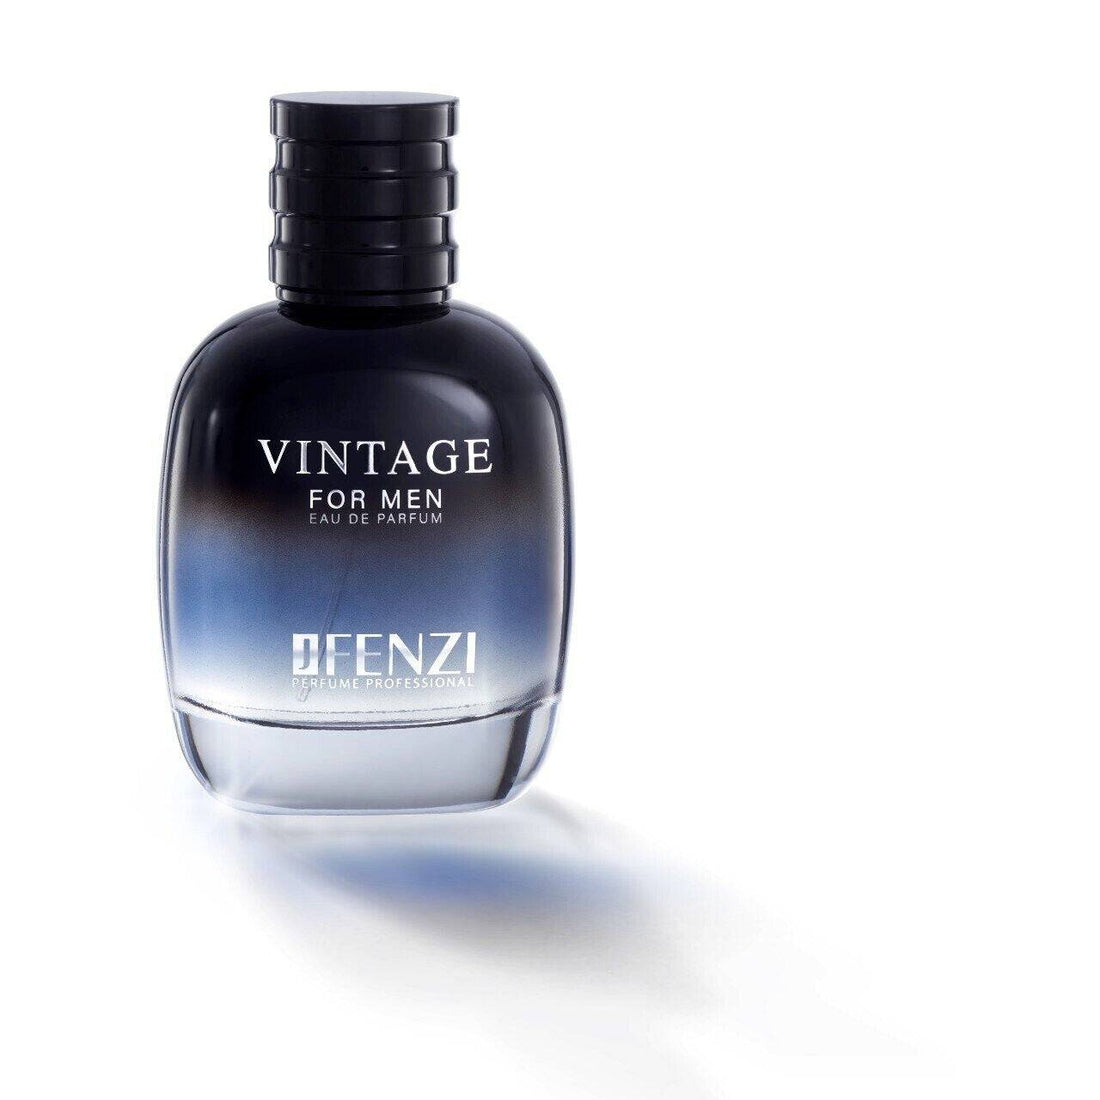 Jfenzi Vintage Perfume For Men - 100ml Eau De Parfum Online